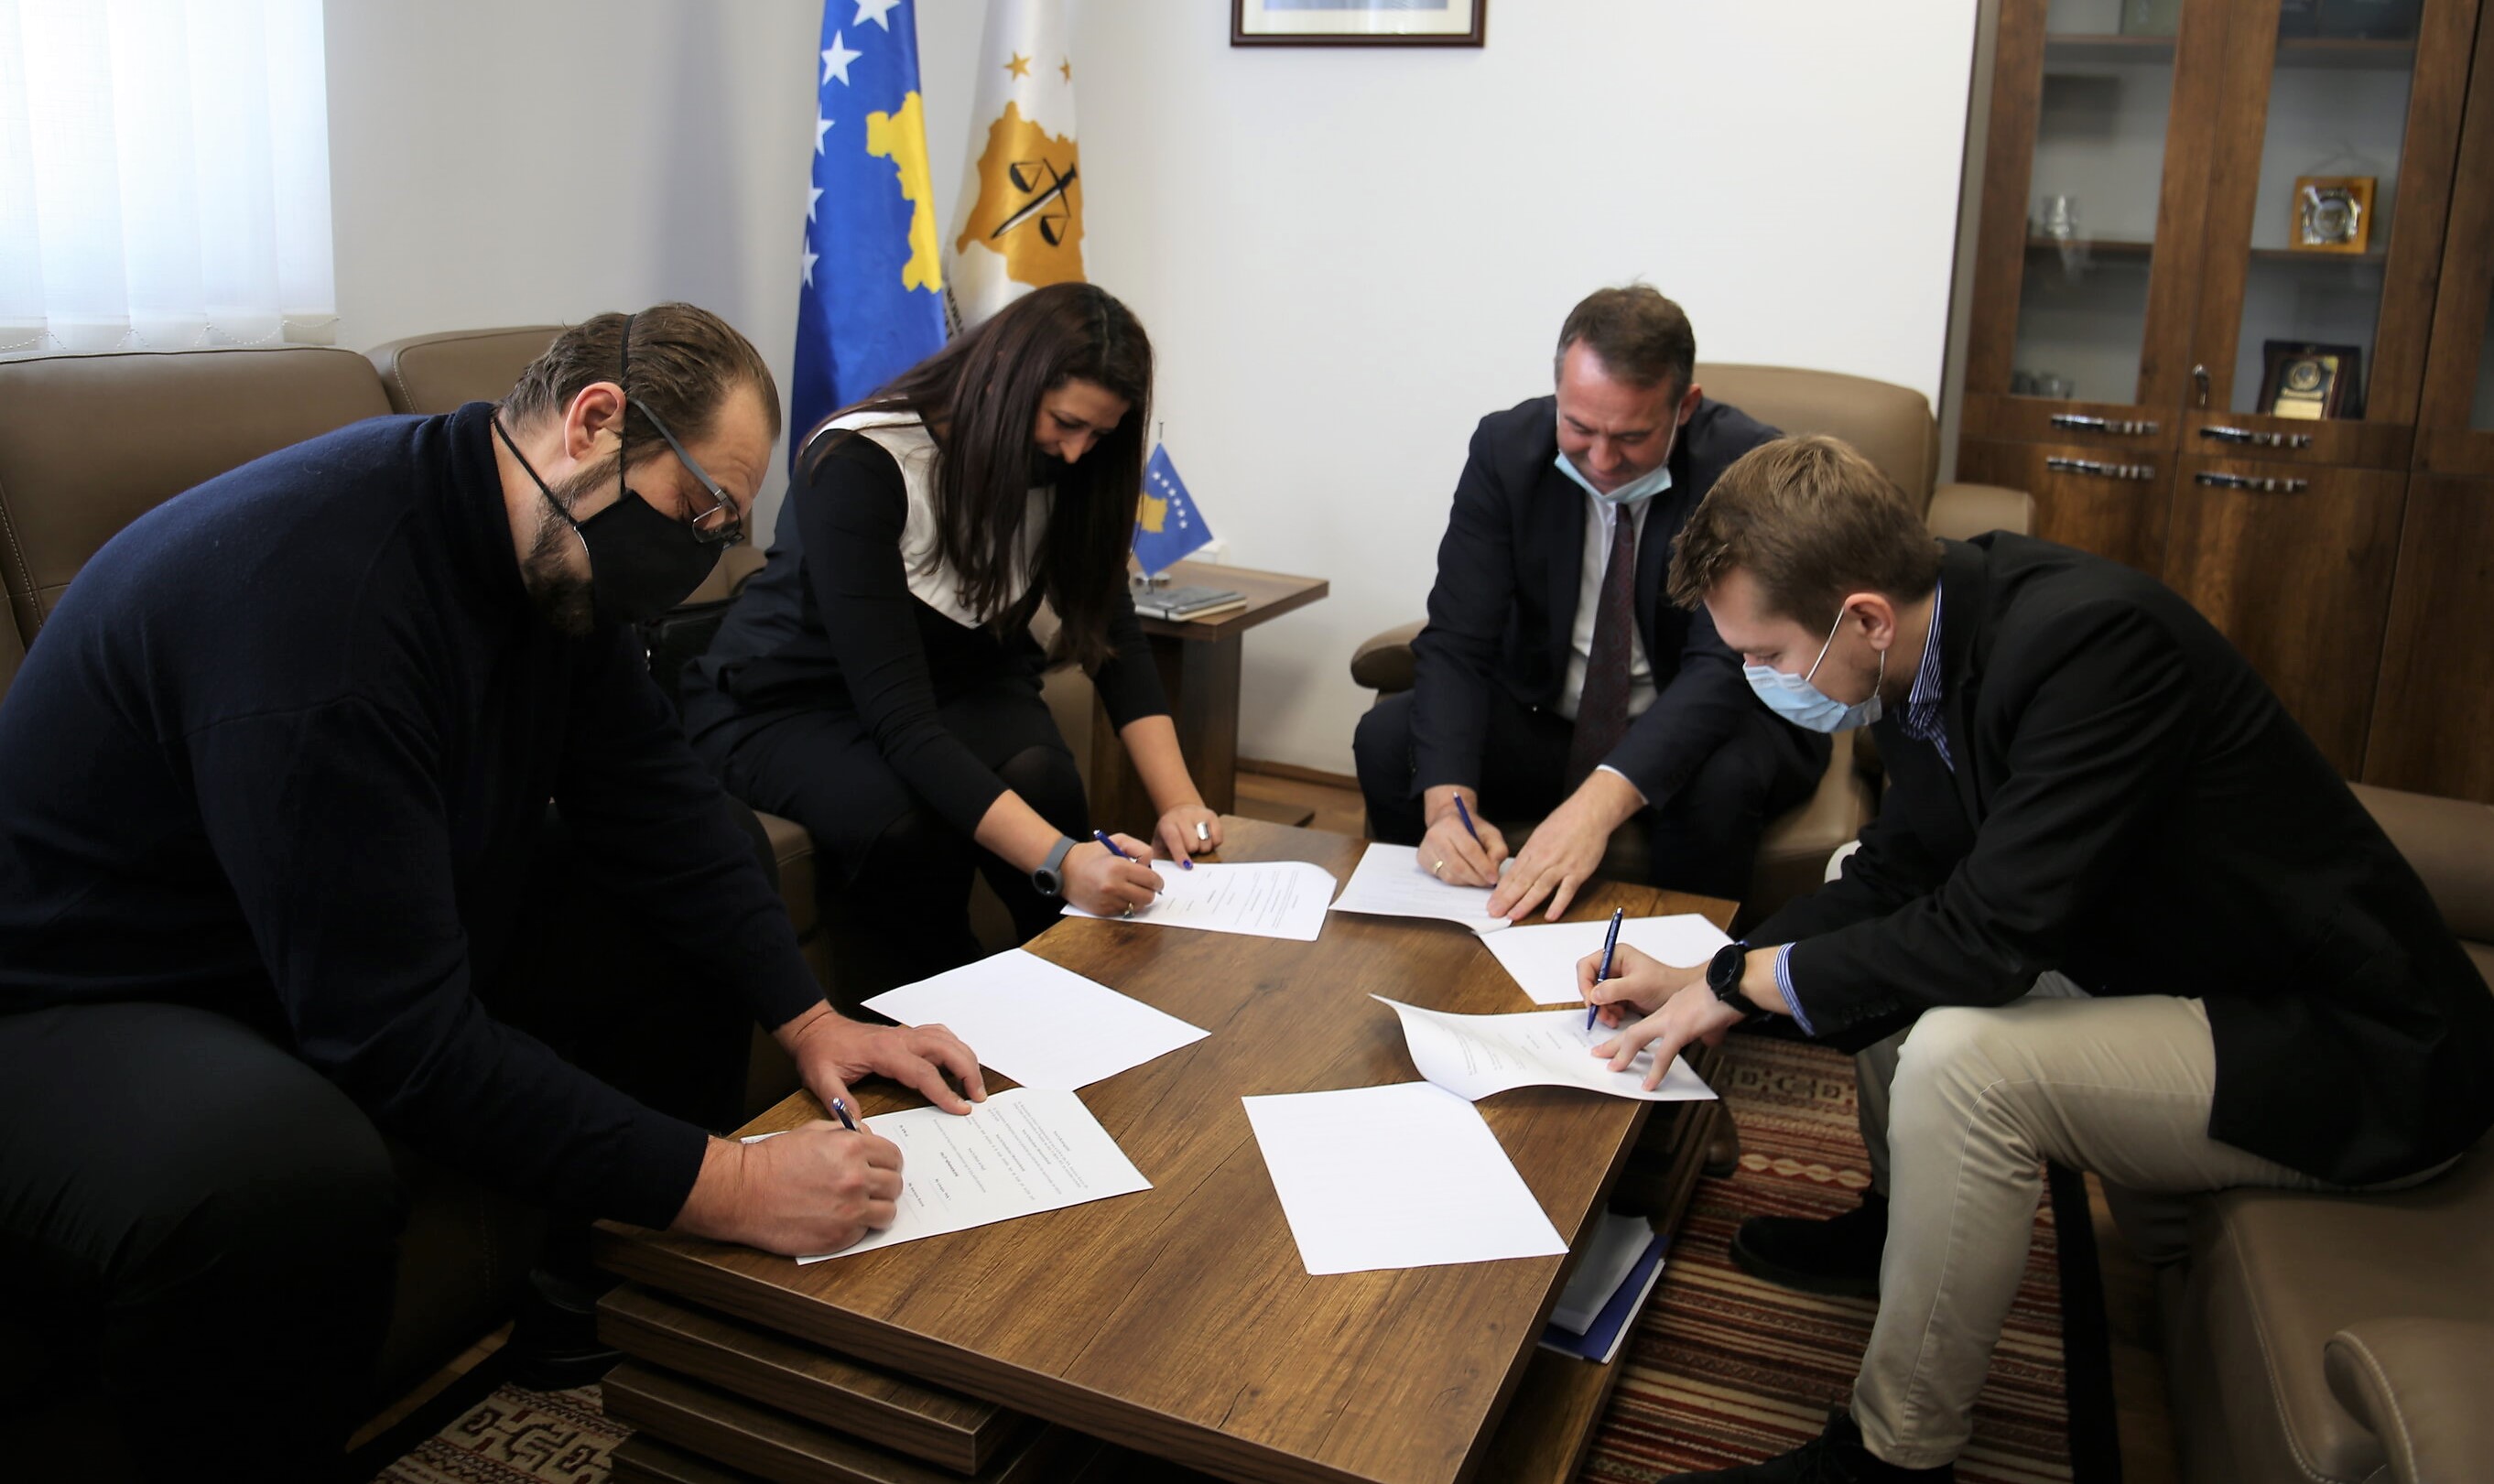 KPK, FOL, Internews Kosova dhe Debate Center nënshkruan memorandum mirëkuptimi